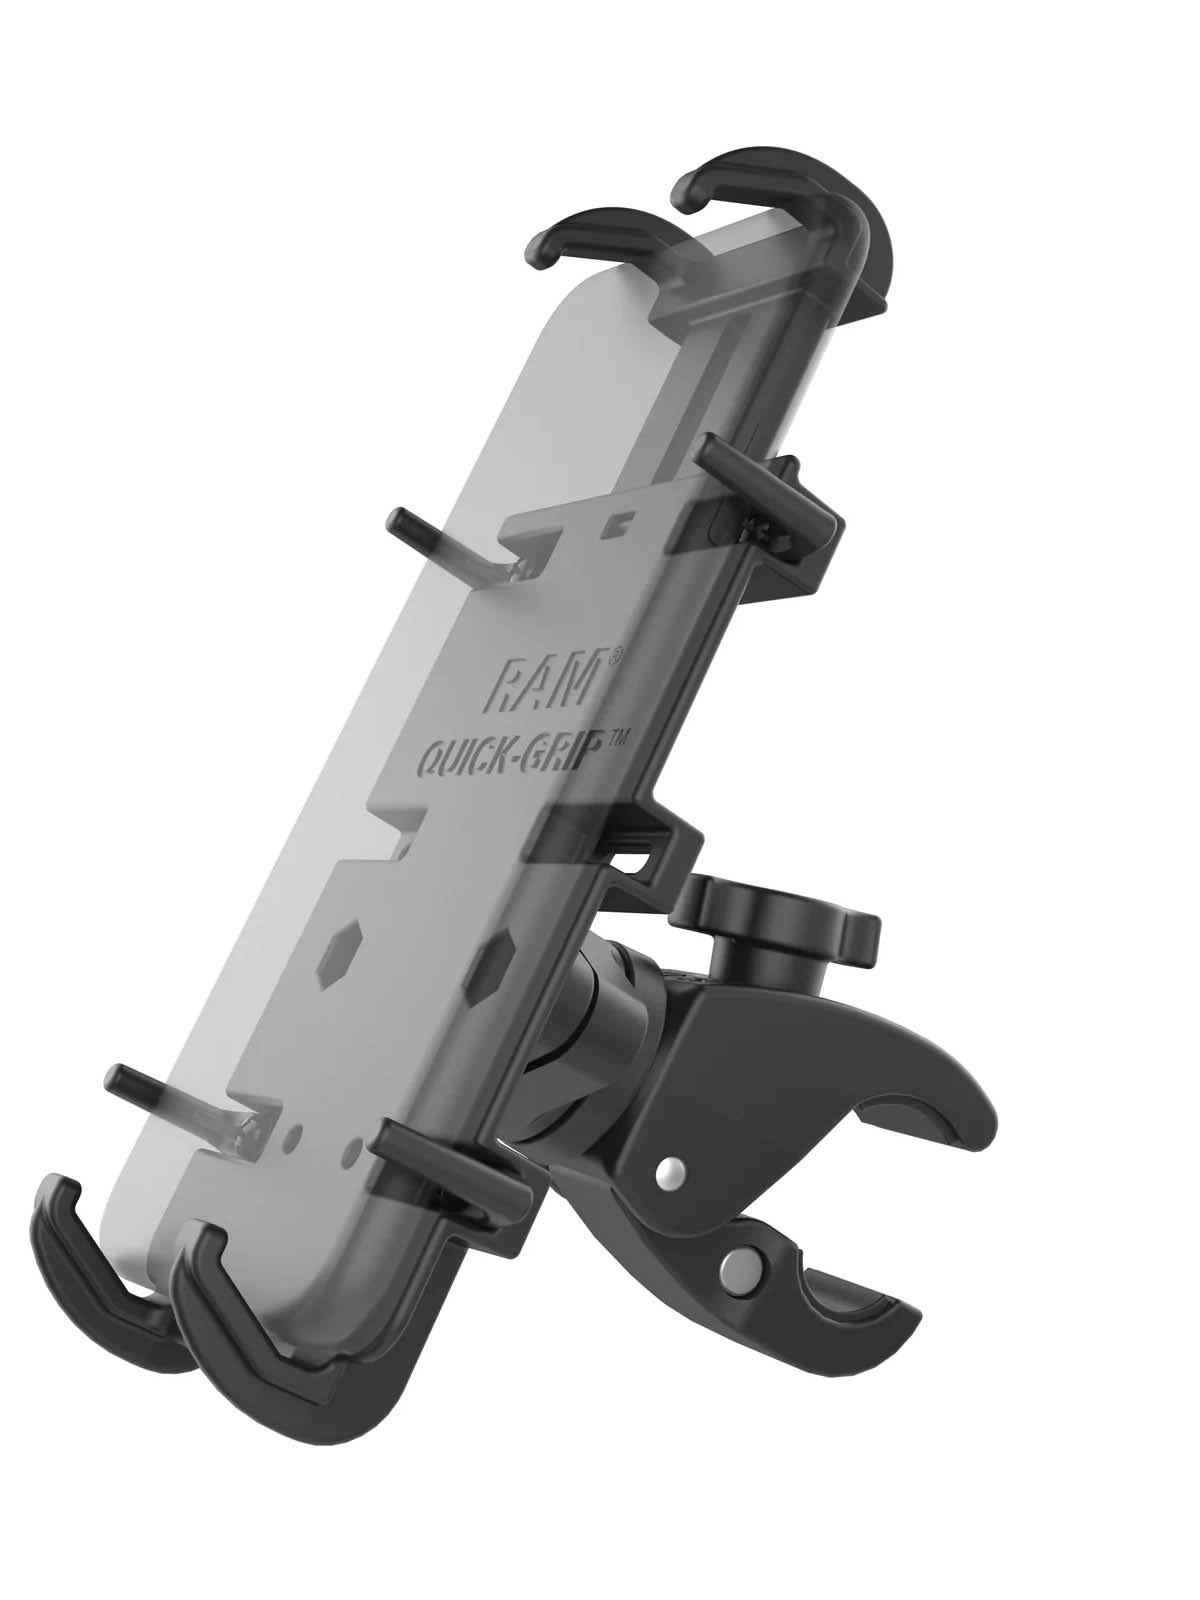 RAM Mounts Tough-Claw (klein) mit Quick-Grip XL Universal-Halteklammer für Smartphones - für Durchmesser 15,9-29,0 mm